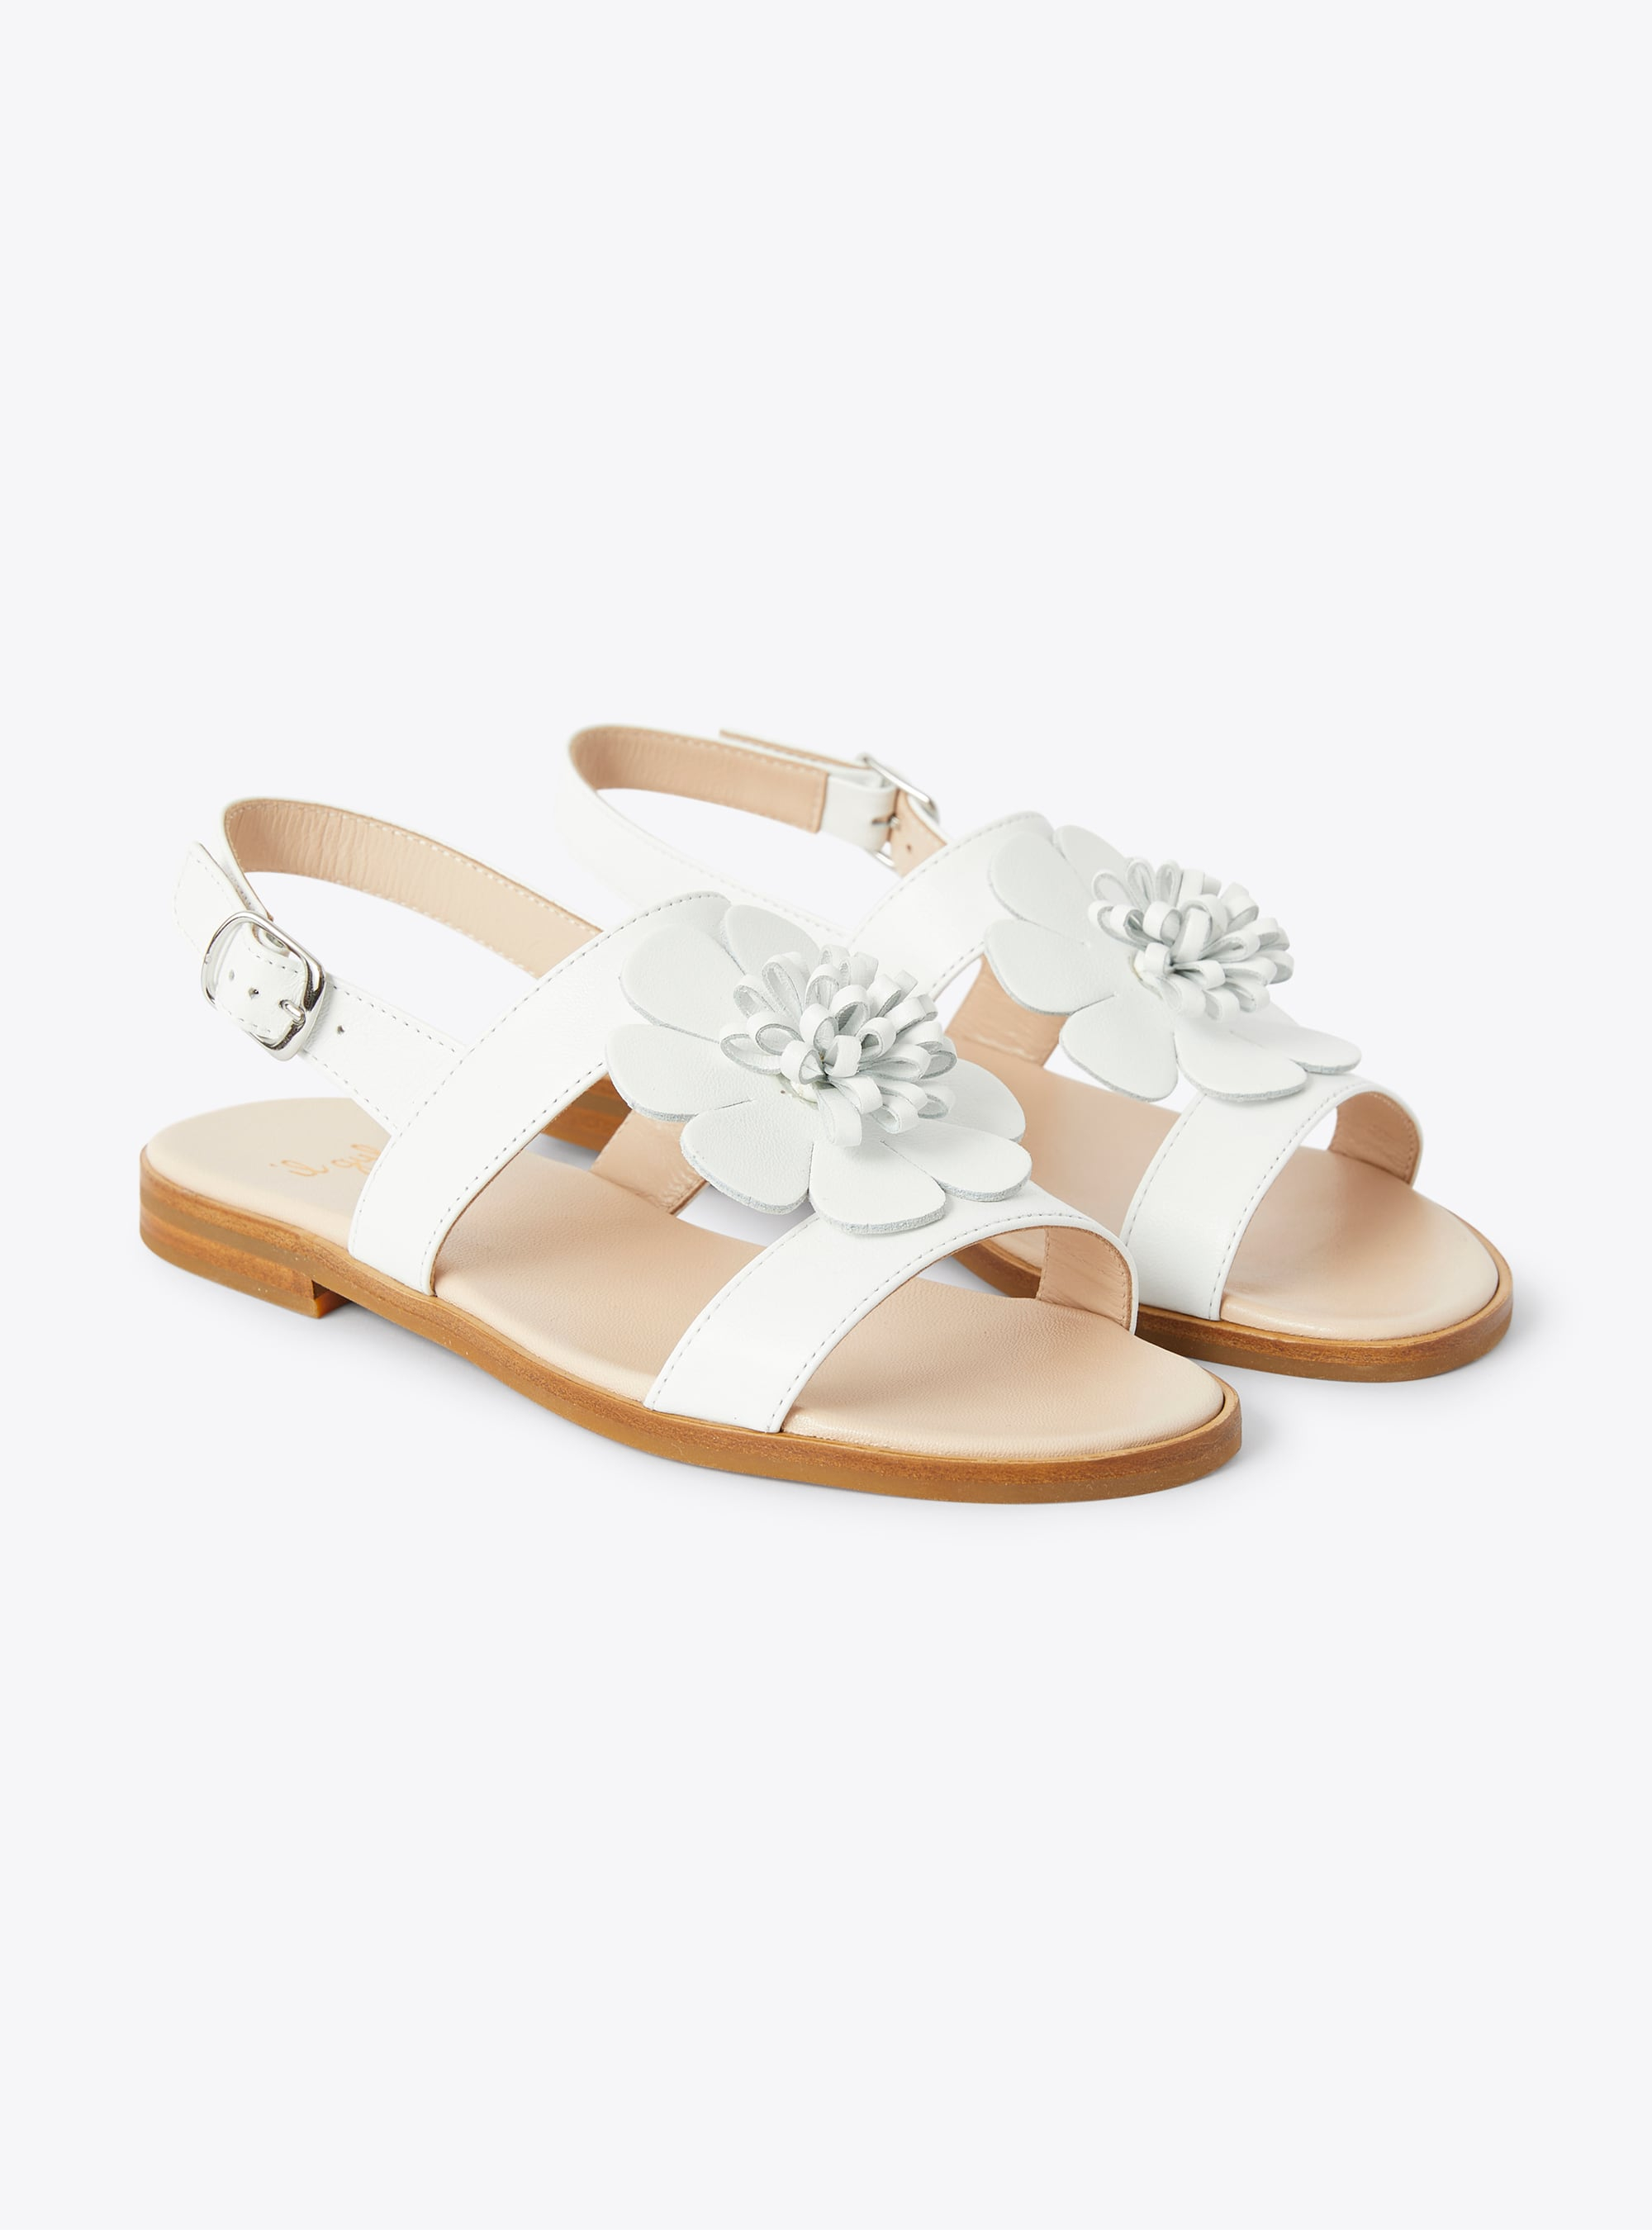 Sandalo in pelle con fiore applicato - Bianco | Il Gufo